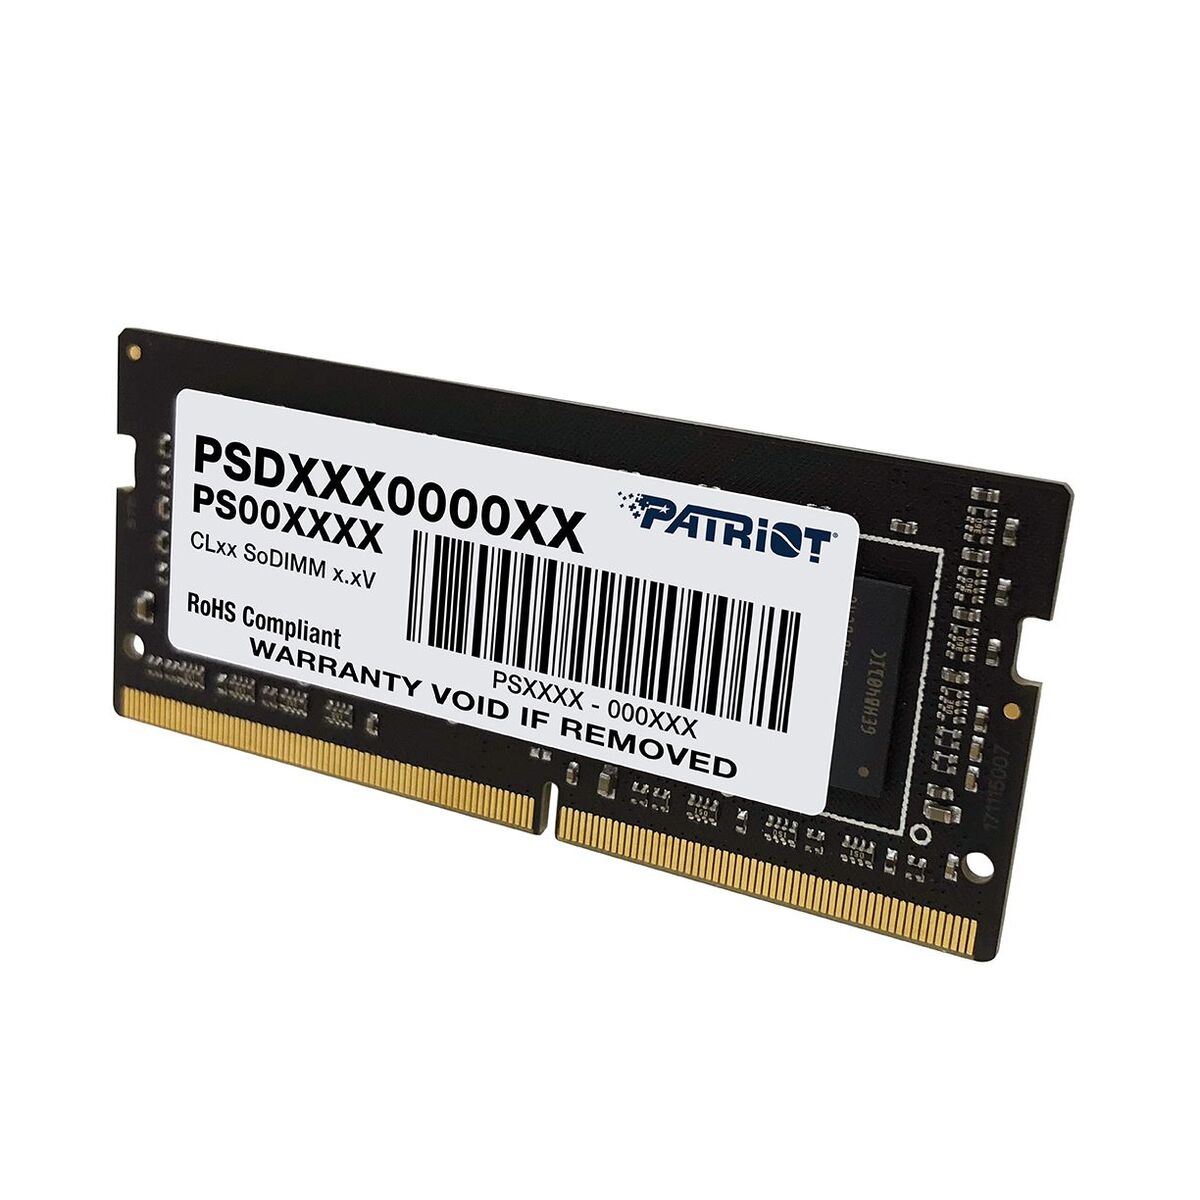 MEMORIA DDR4 PATRIOT SIGNATURE 32GB 2666MHz SODIMM (PSD432G26662S)